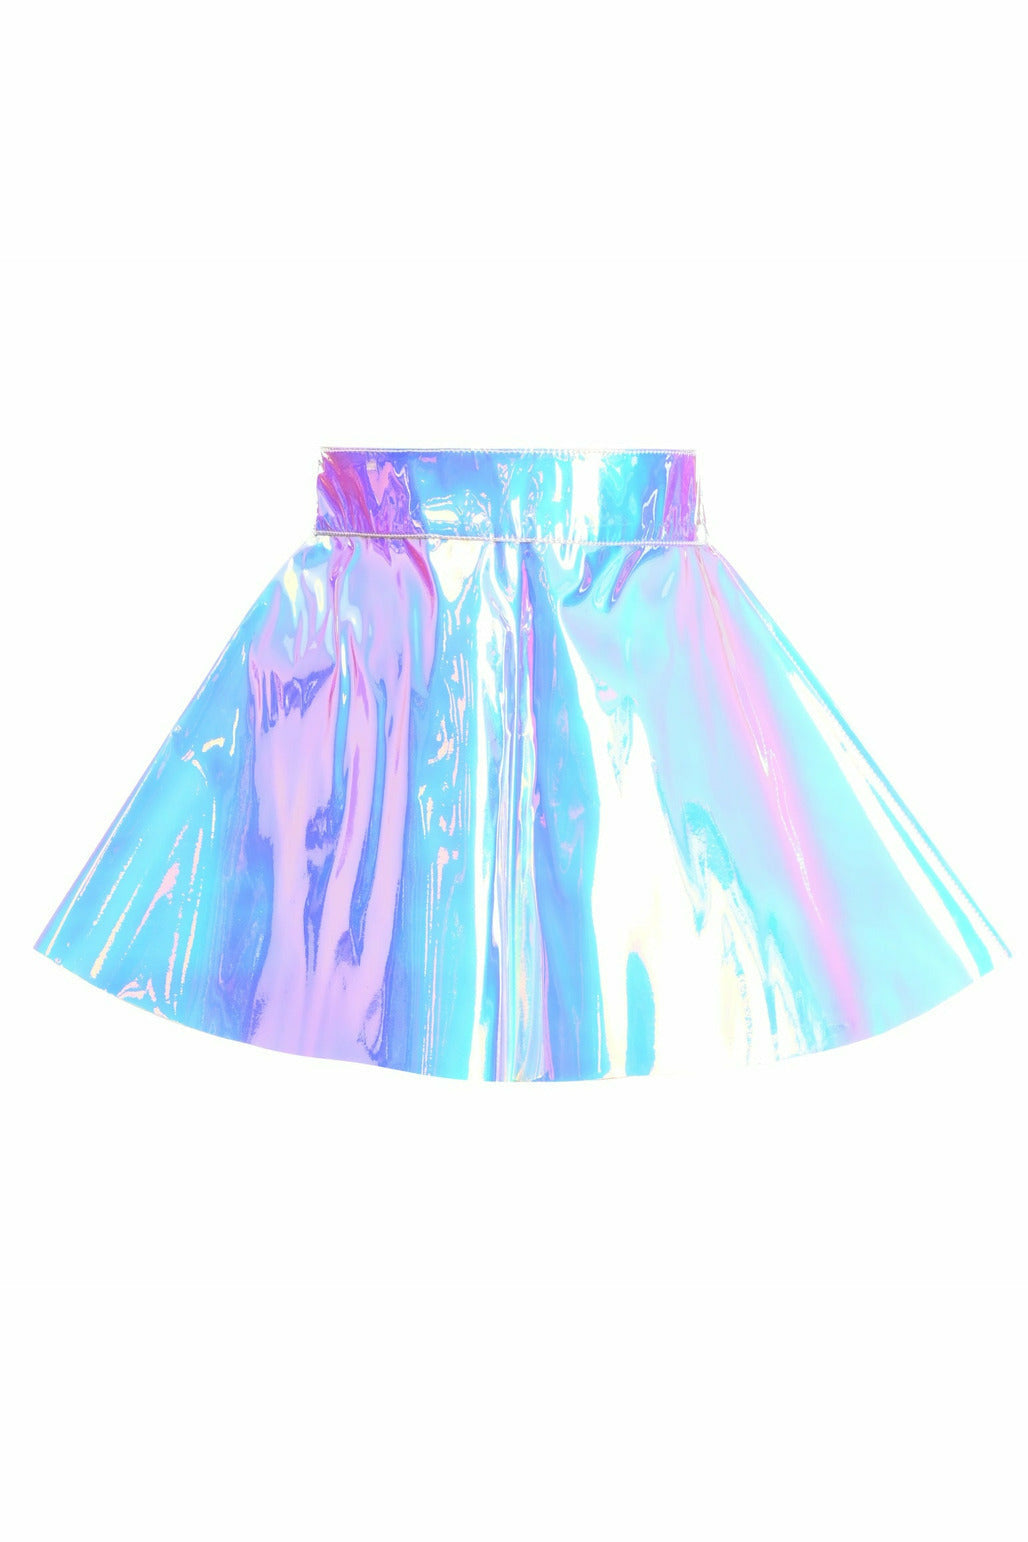 Blue/Purple Holo Skater Skirt - Lust Charm 